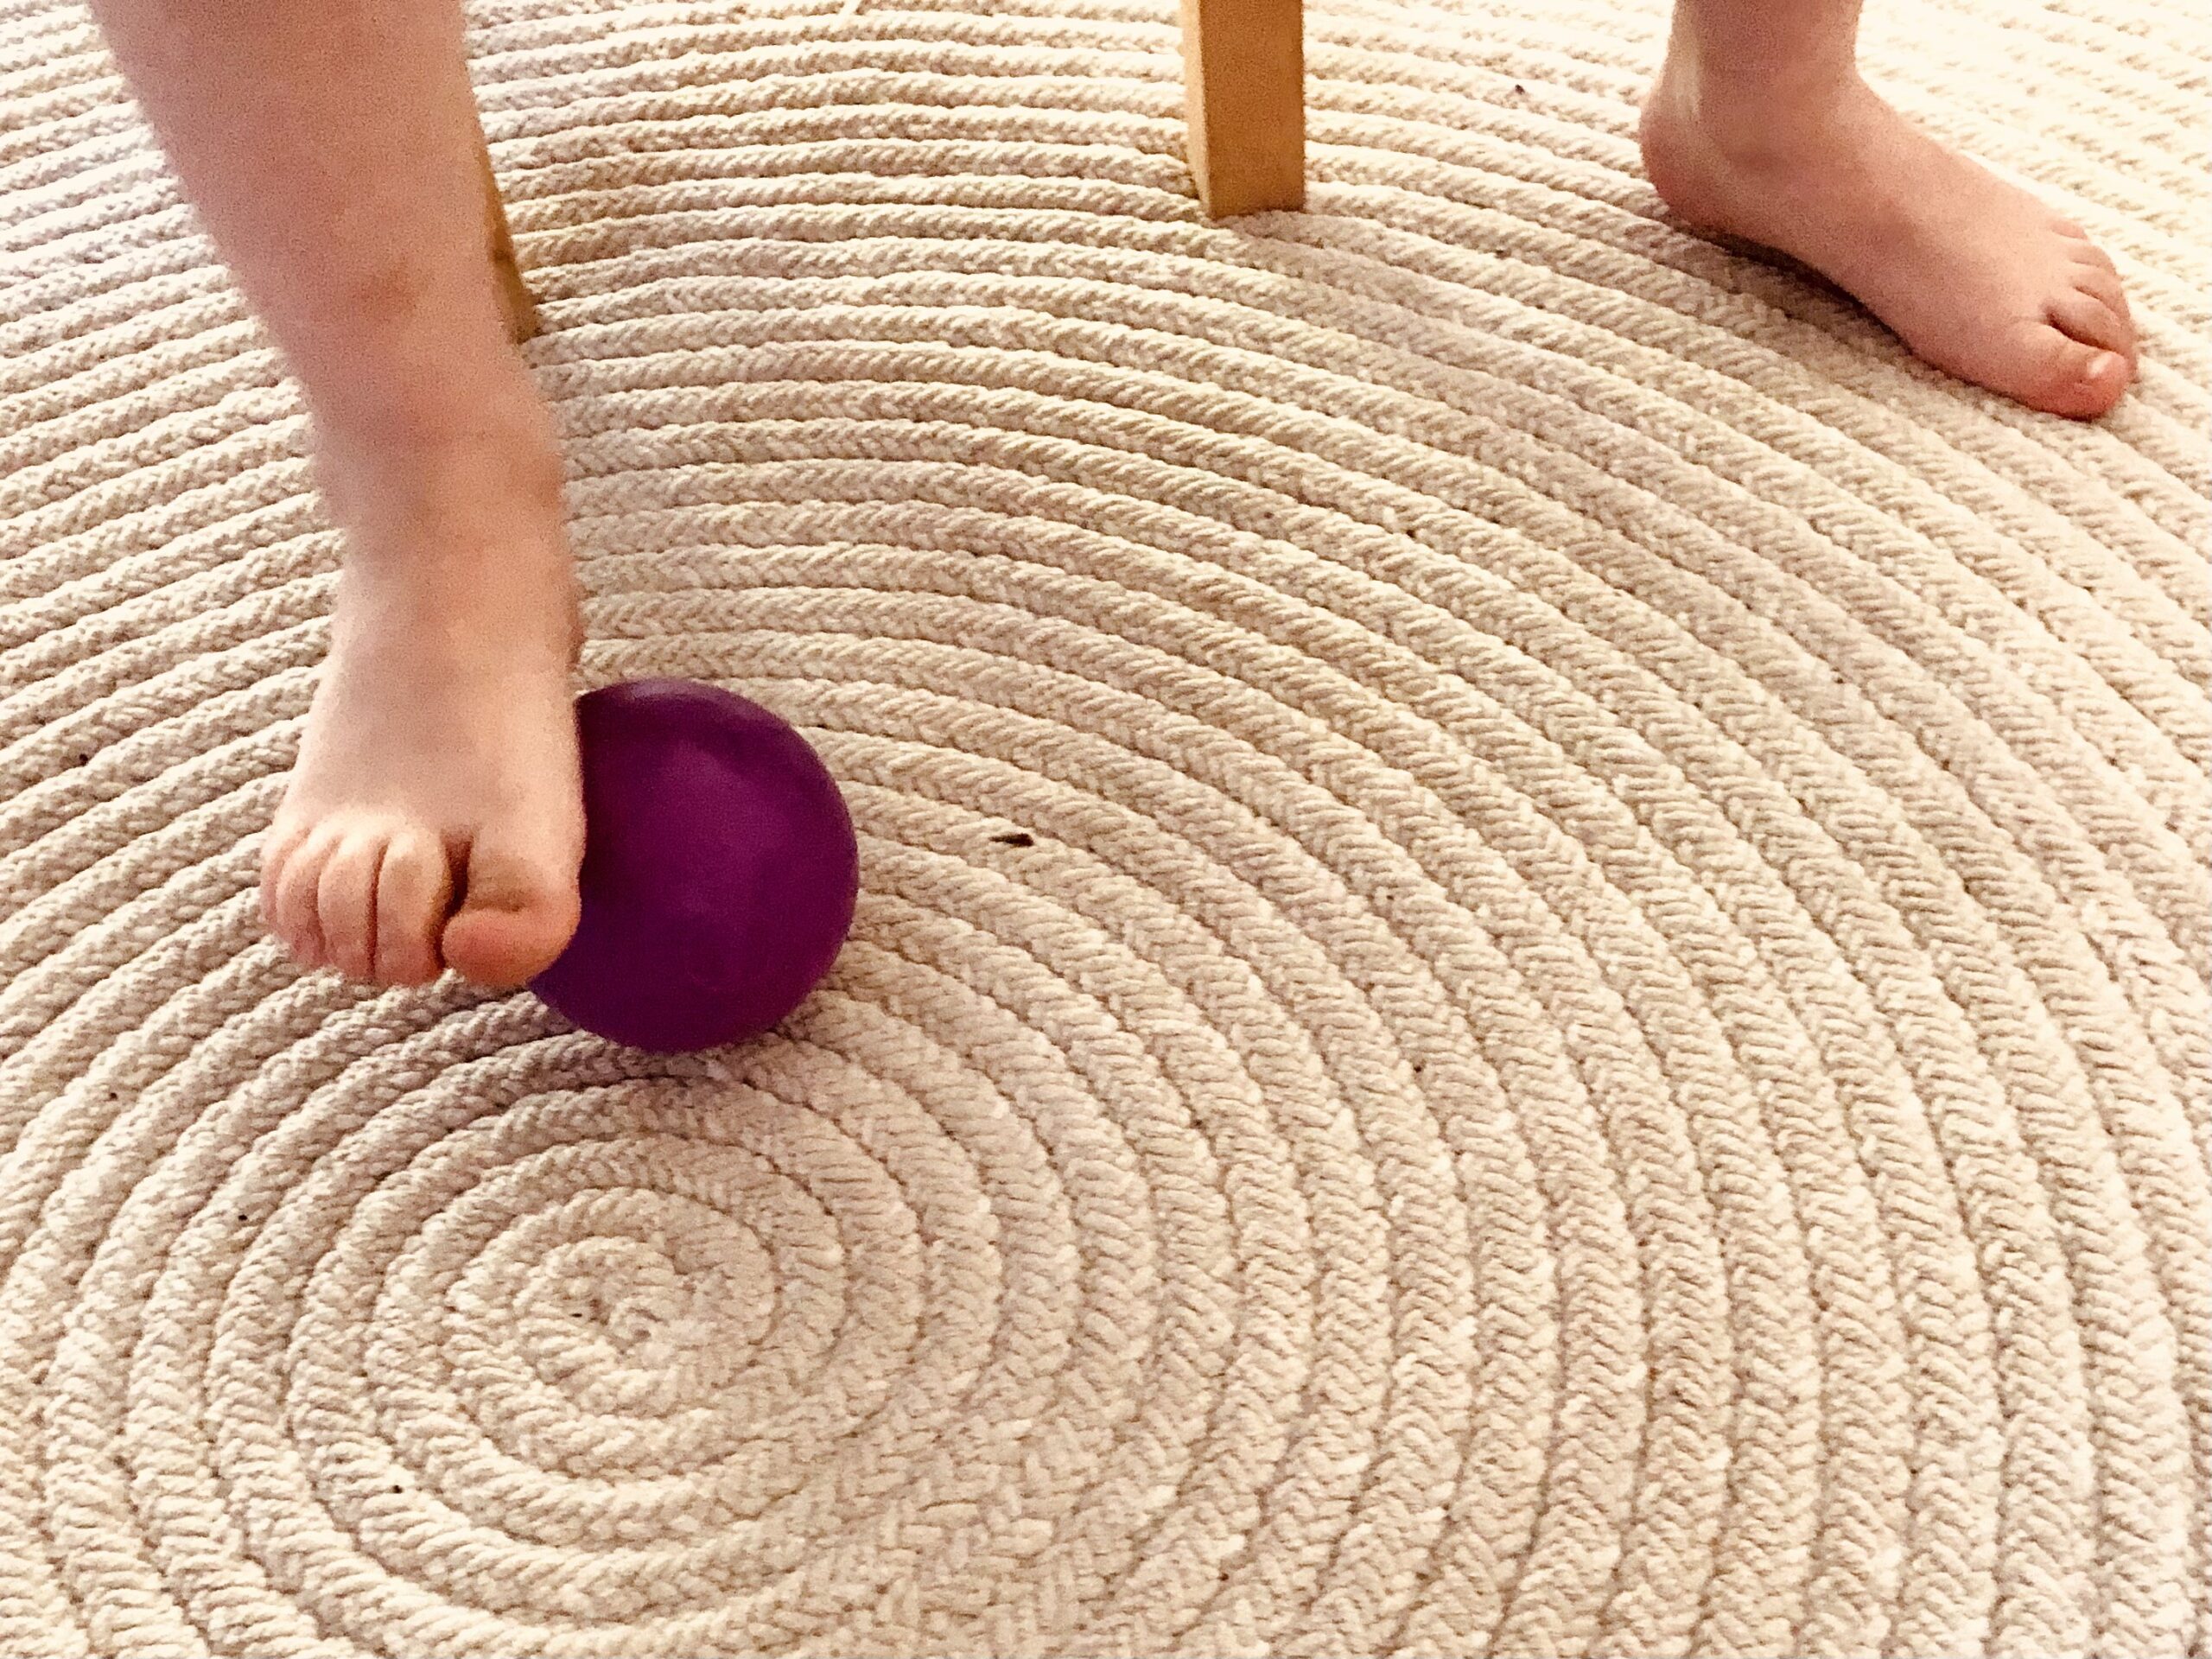 Bild zum Schritt 19 für das Bastel- und DIY-Abenteuer für Kinder: 'Zum Abschluss massiert ihr eure Füße mit einem Ball. Dafür...'